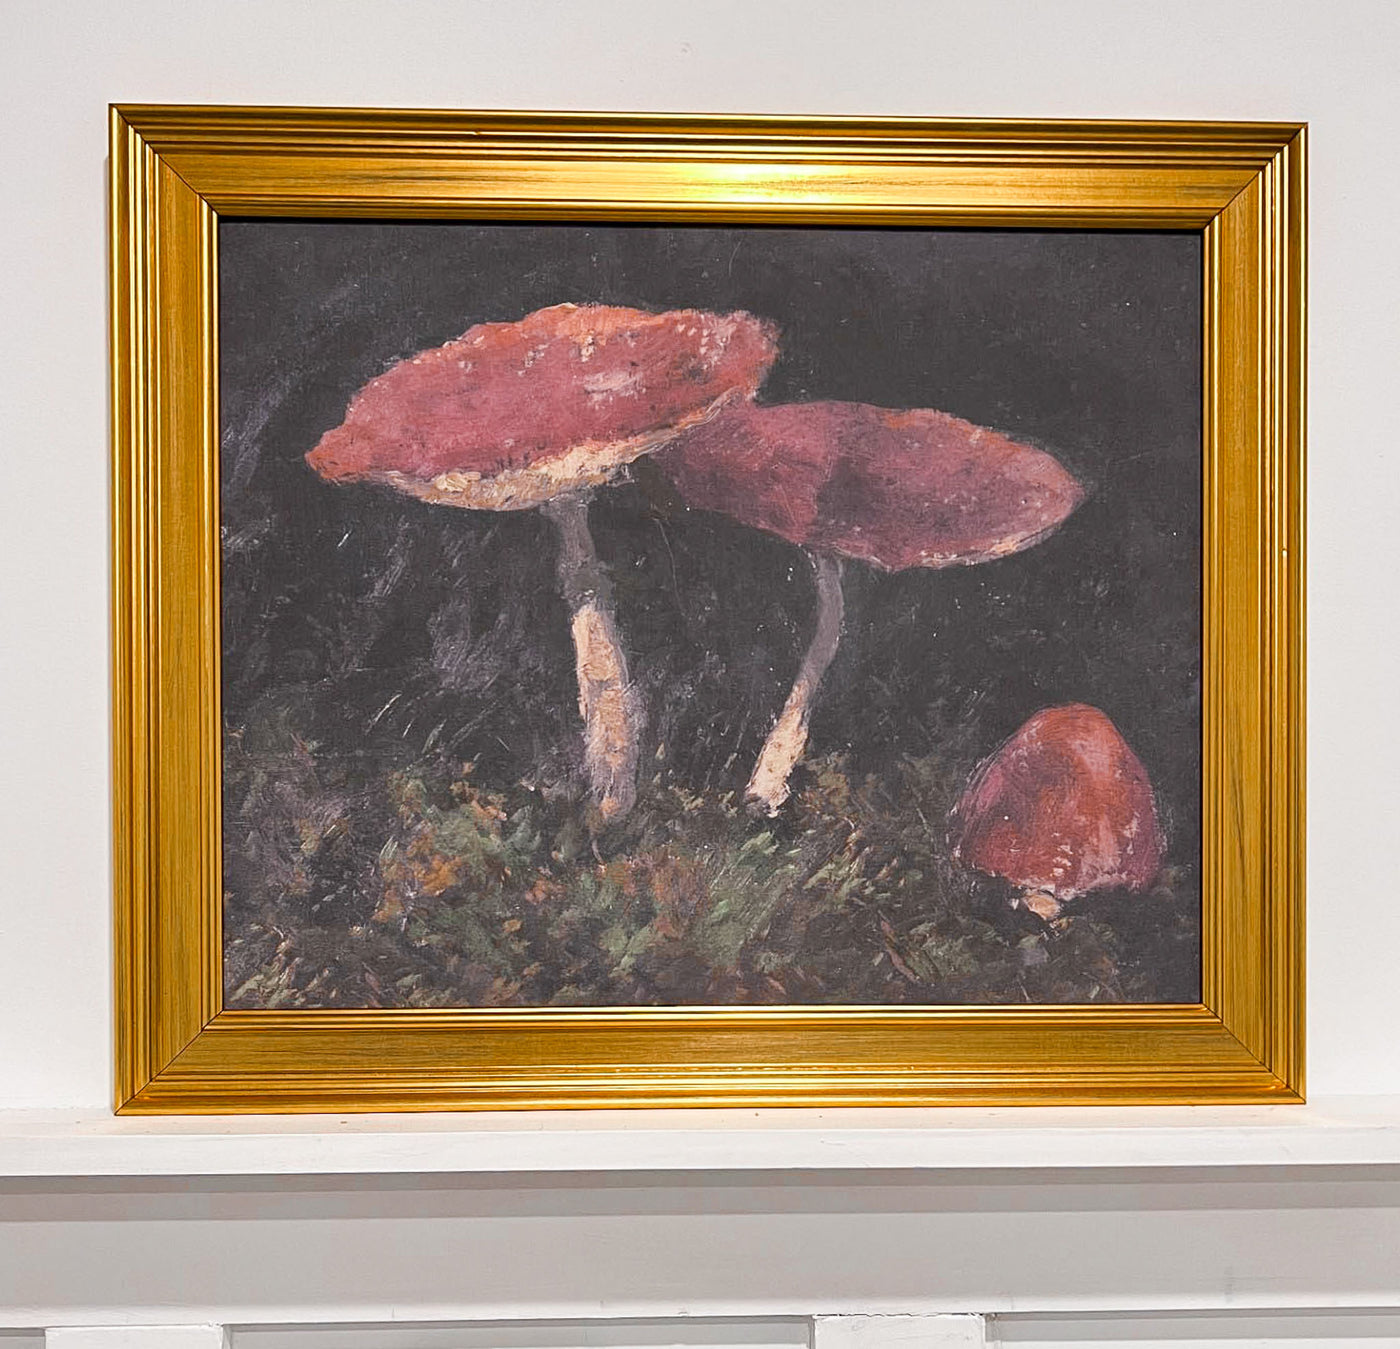 20" x 23.25 Framed Artwork - Vintage Mushrooms